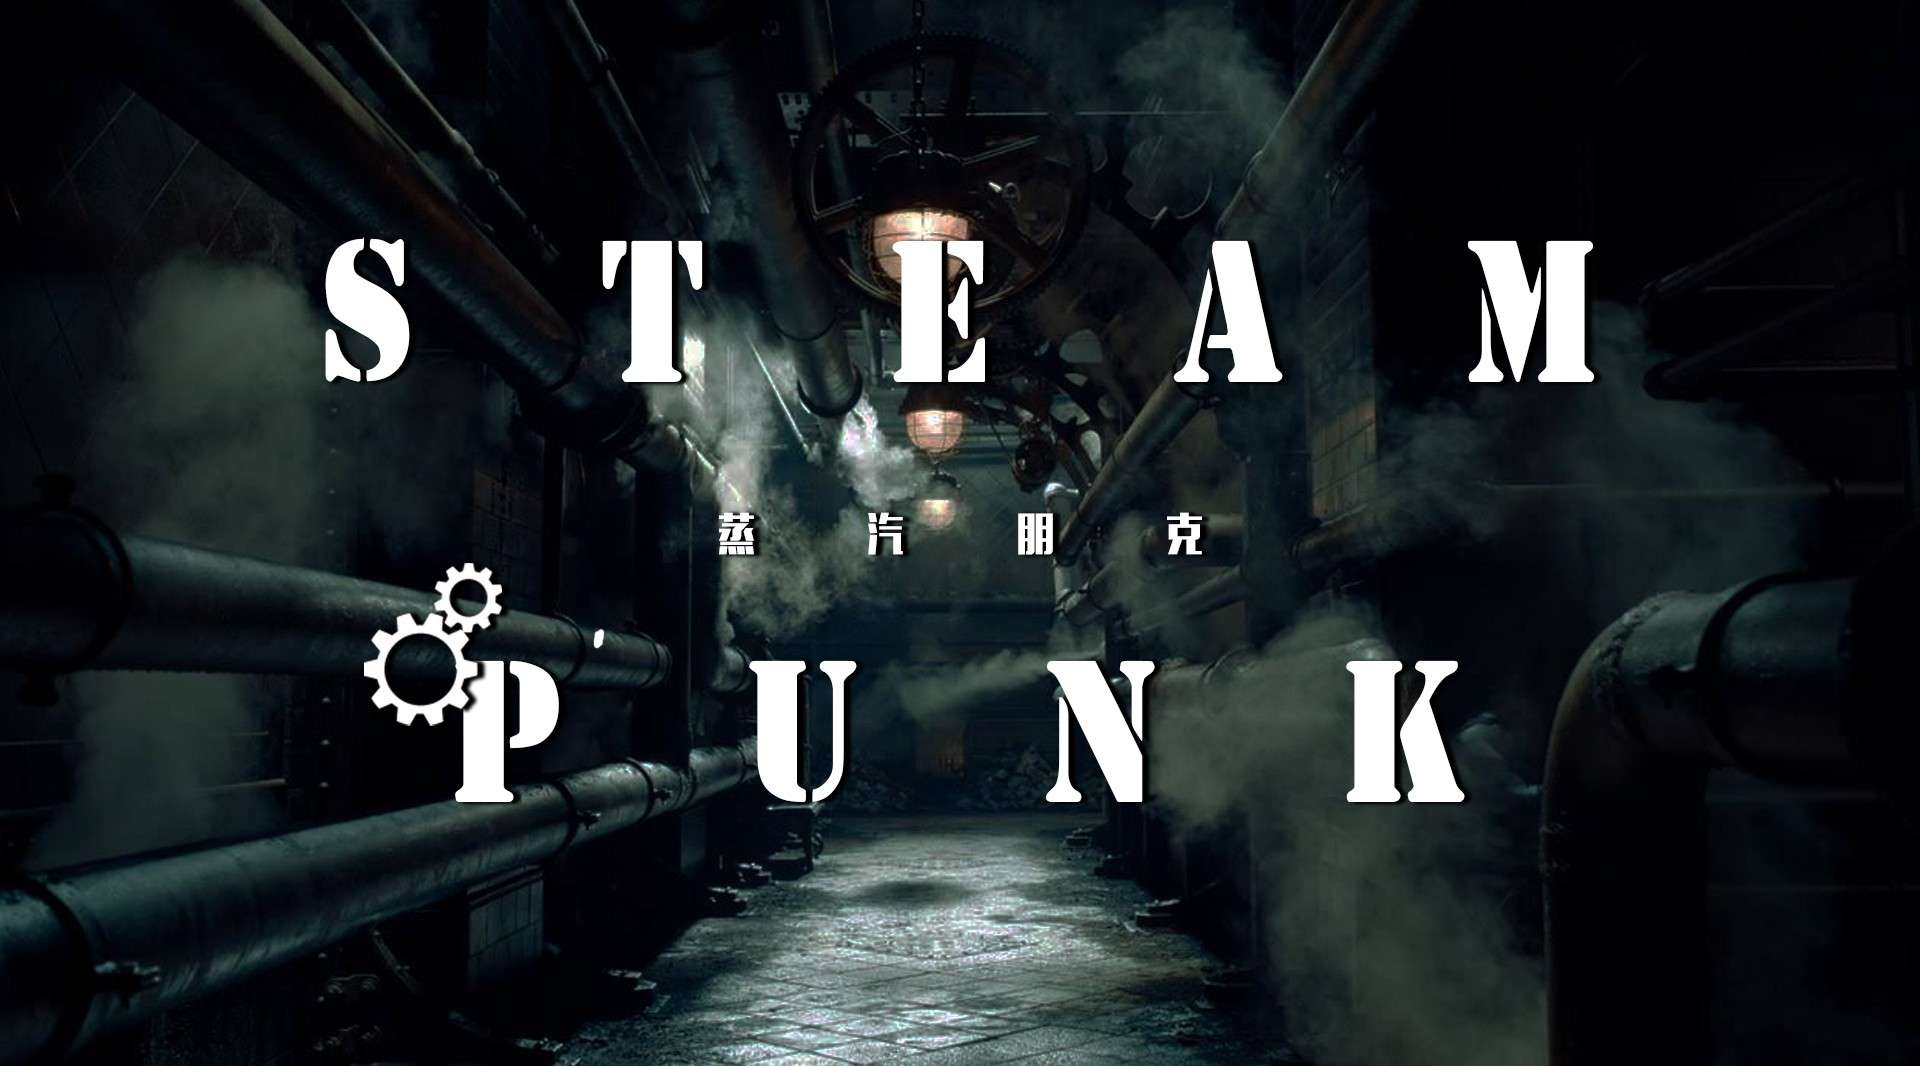 【混剪】Steam Punk 蒸汽朋克